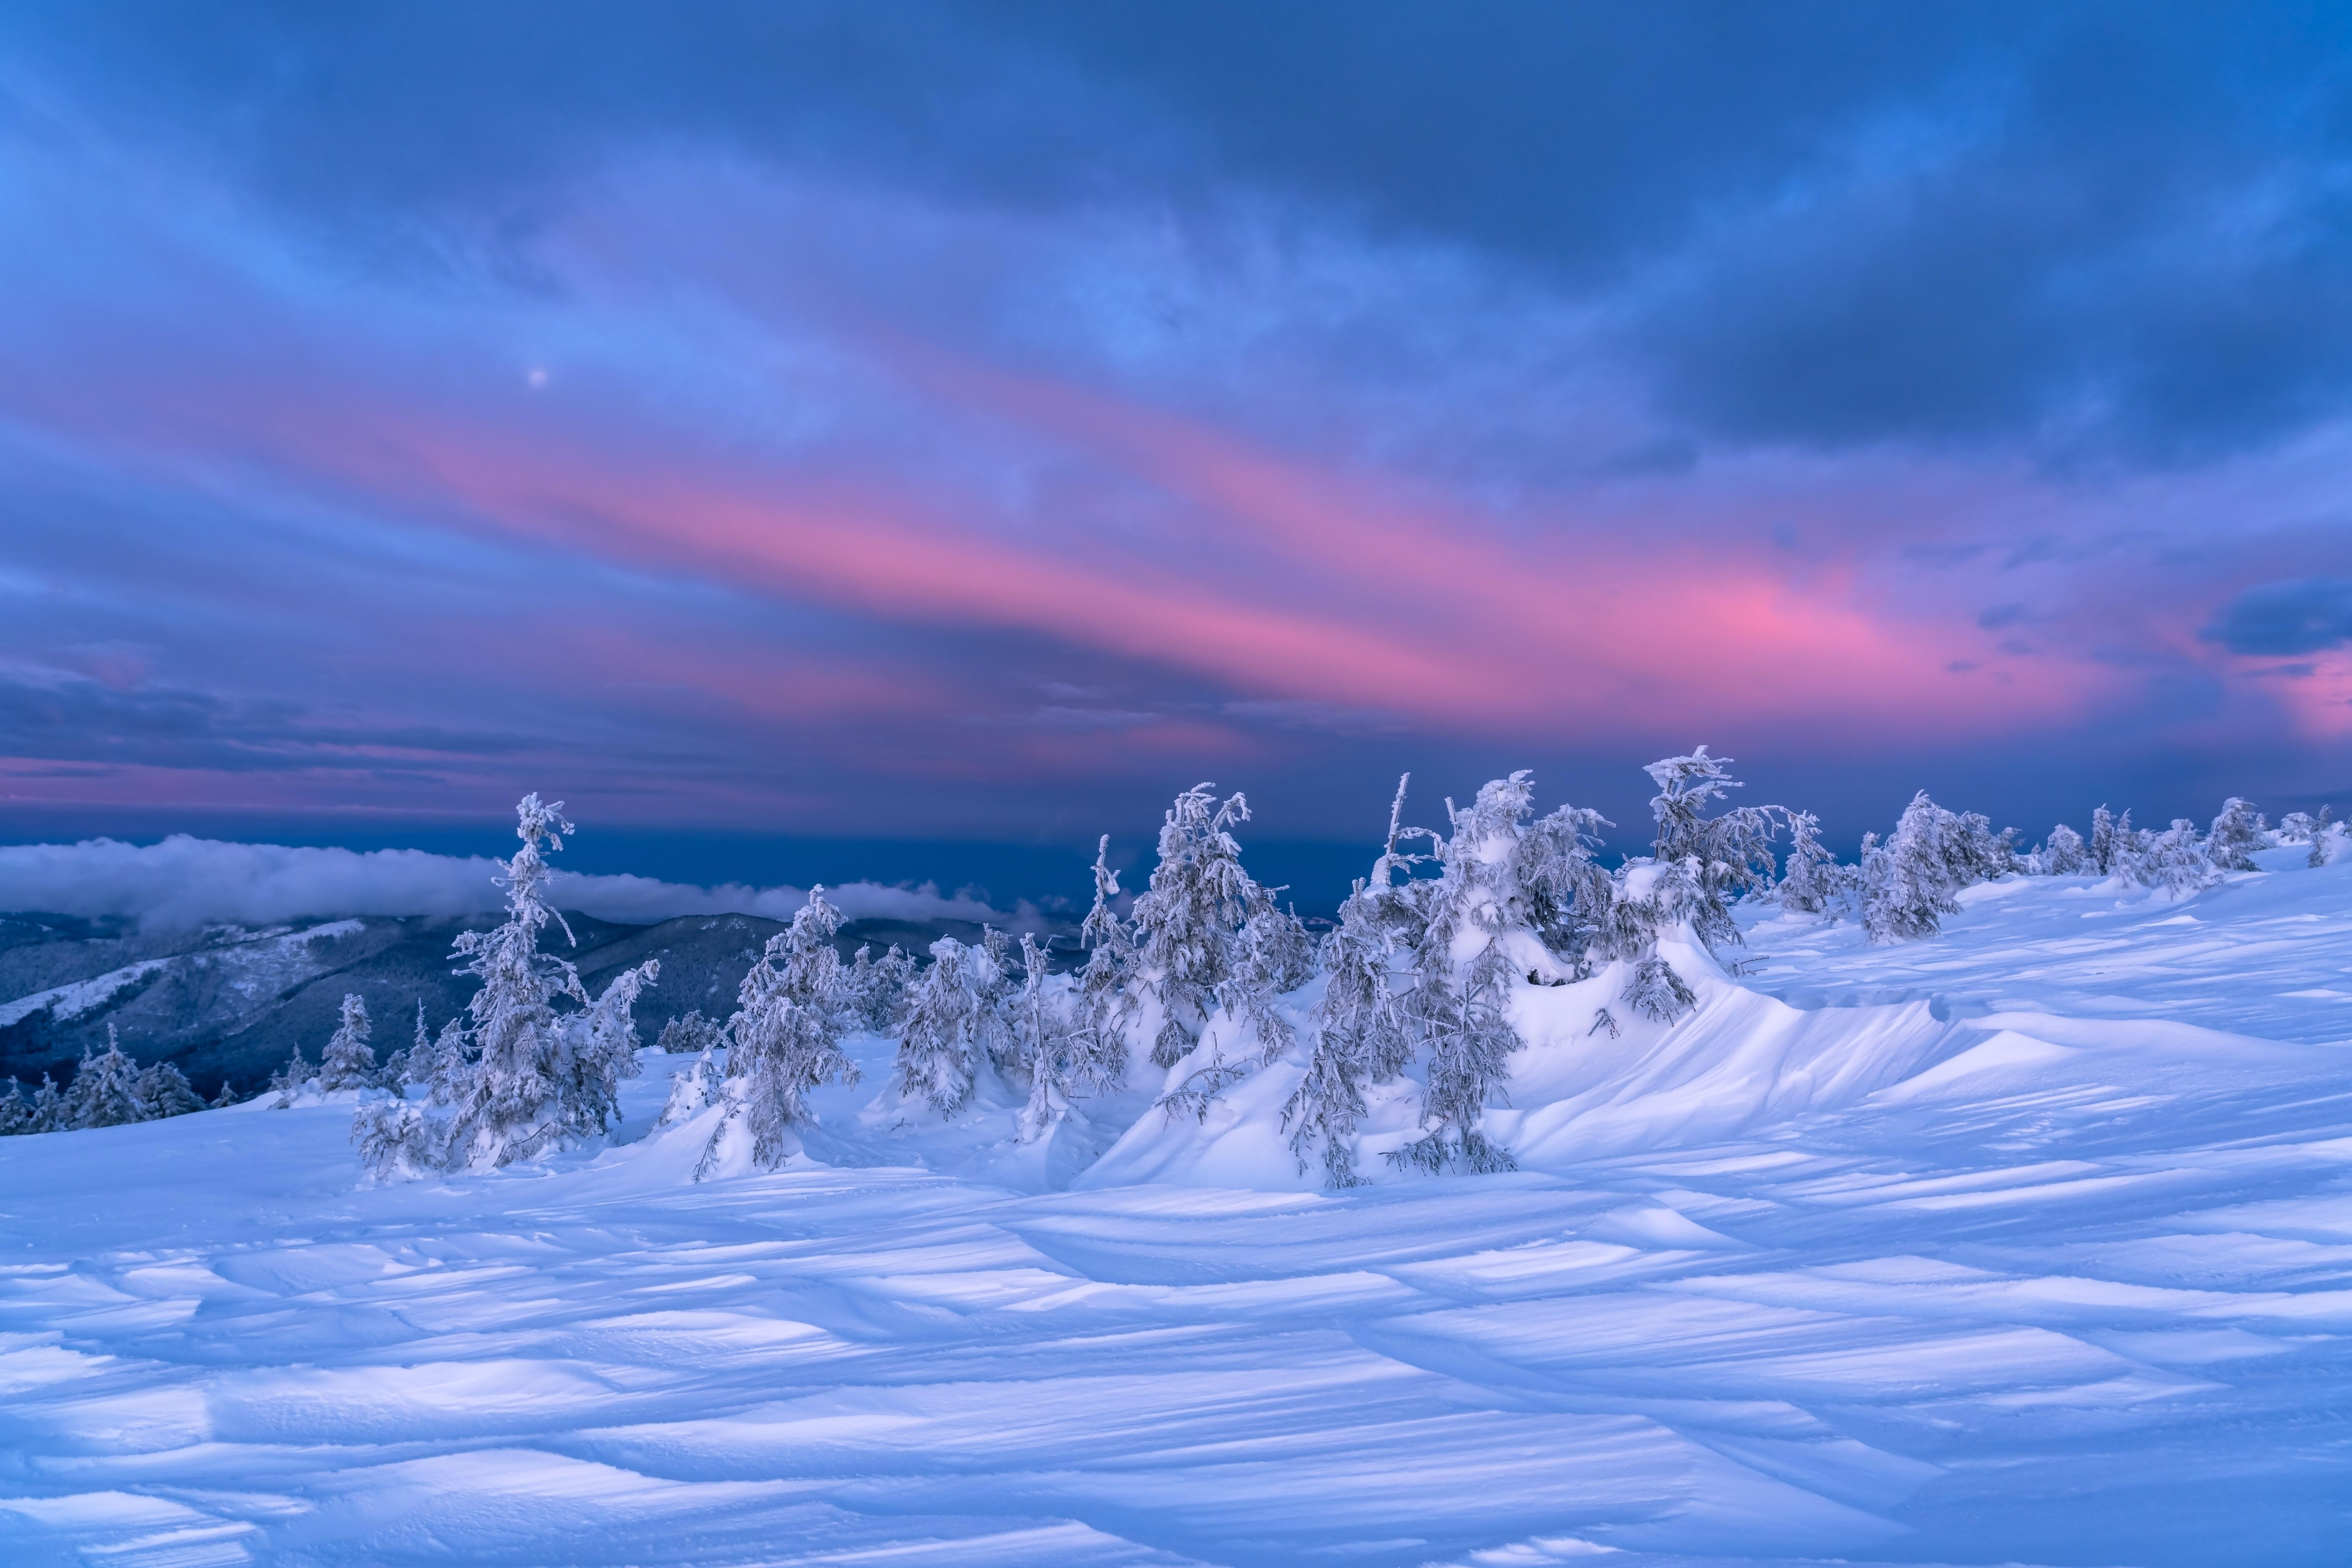 Nature Winter 4k Ultra HD Wallpaper By Daniel Mirlea